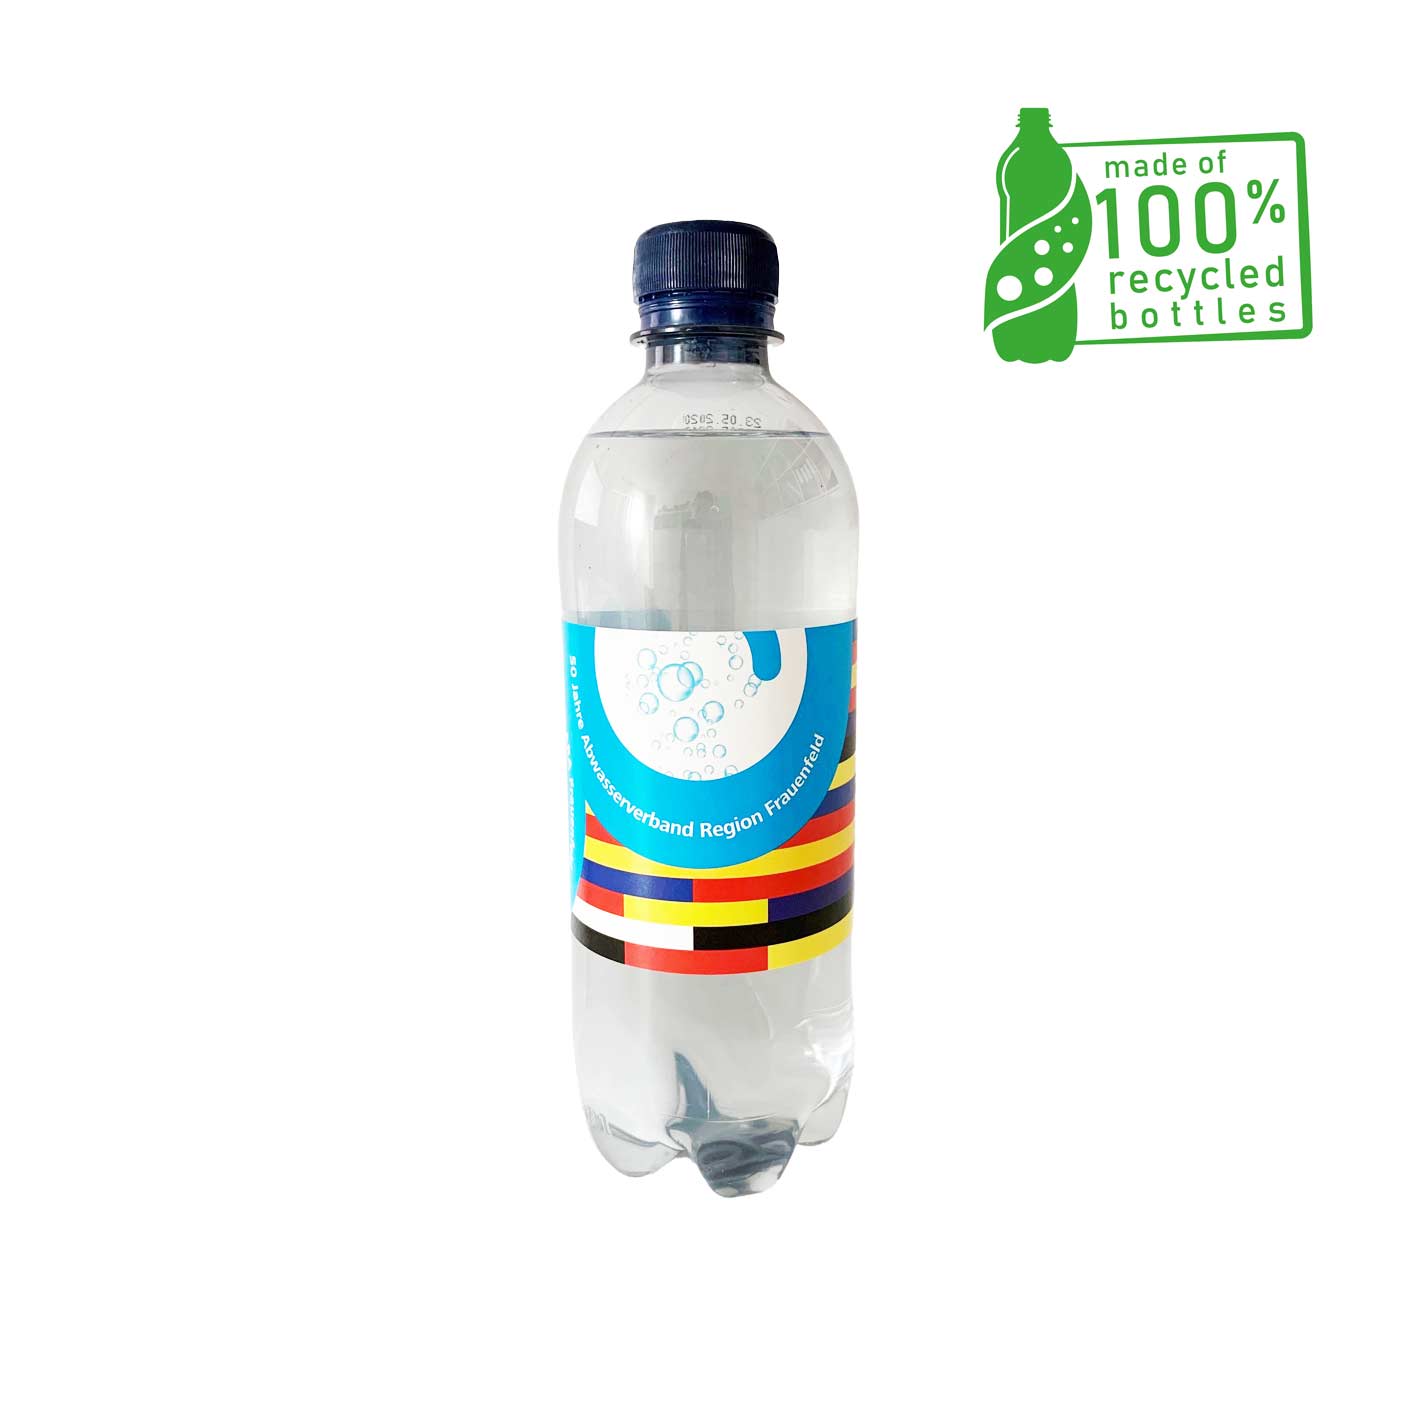 Mineralwasser mit Logo